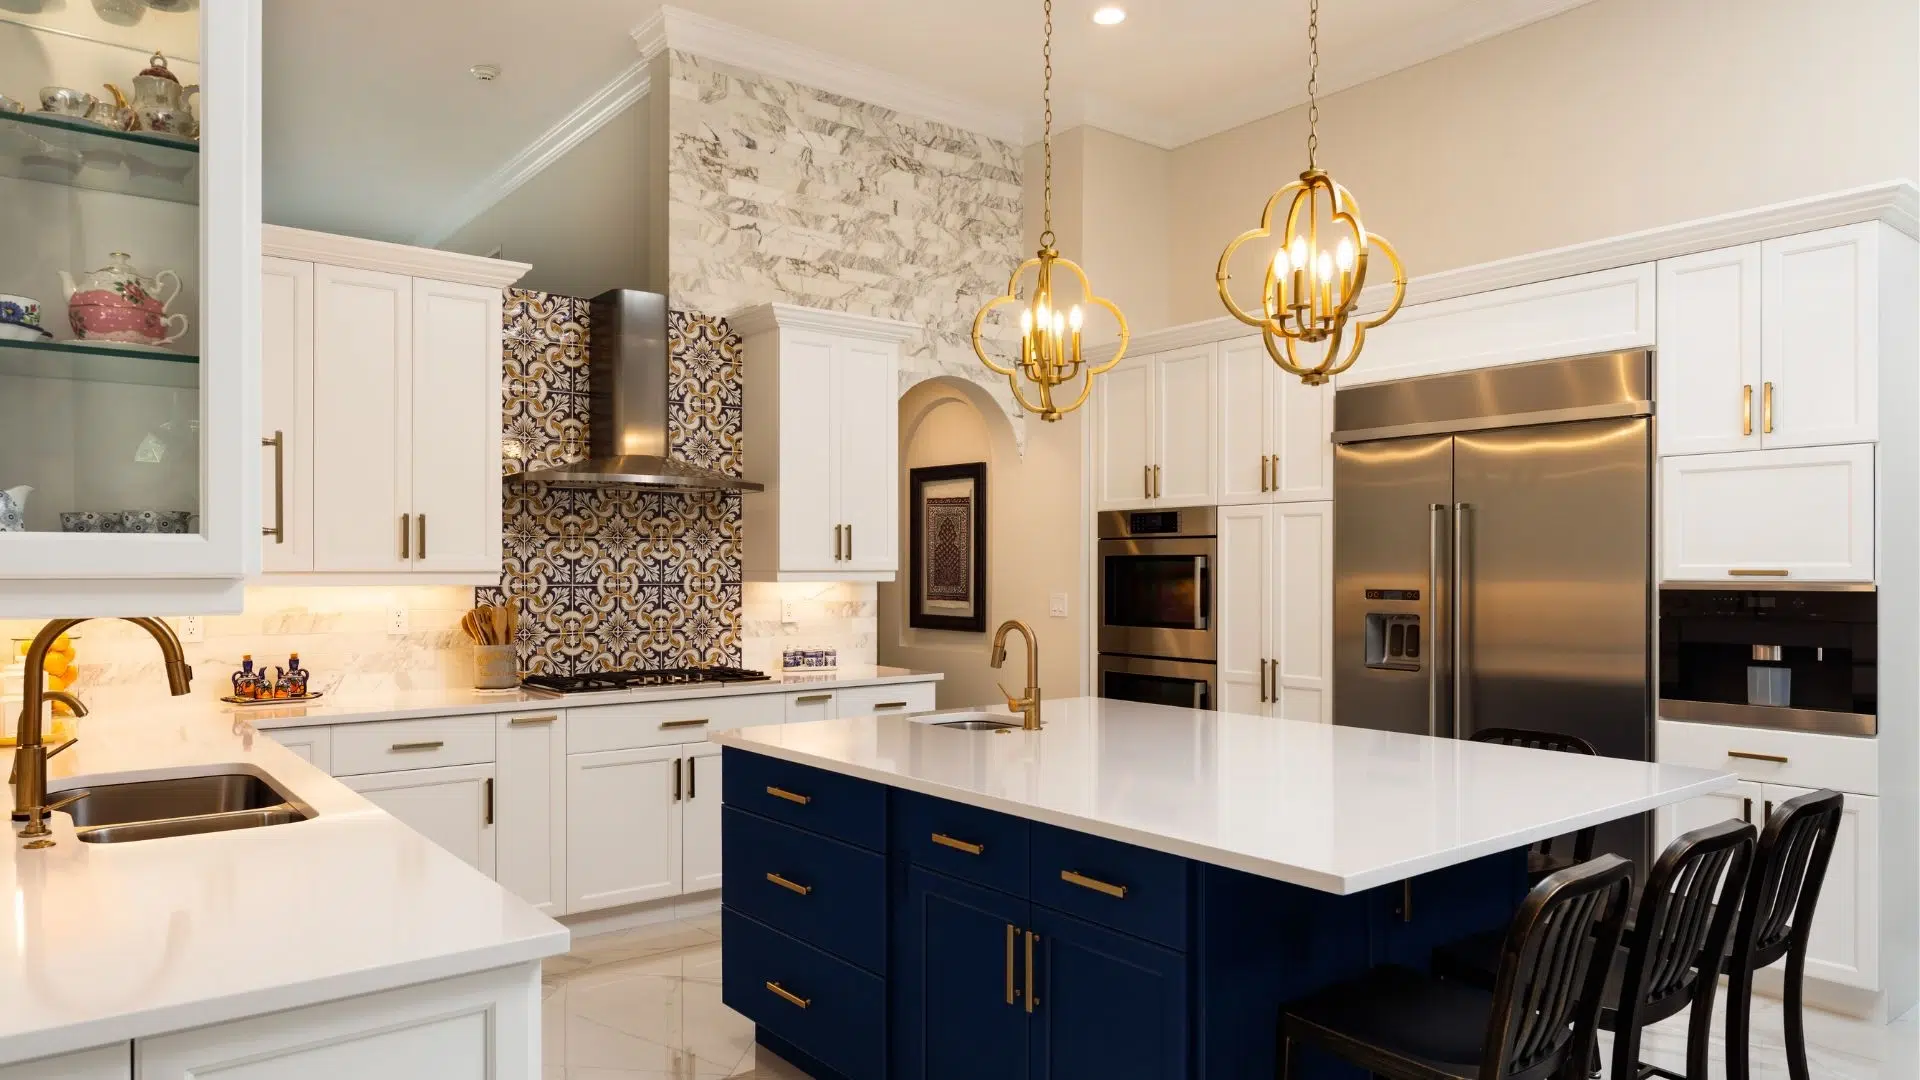 Elegant kitchen design with multifunctional kitchen island